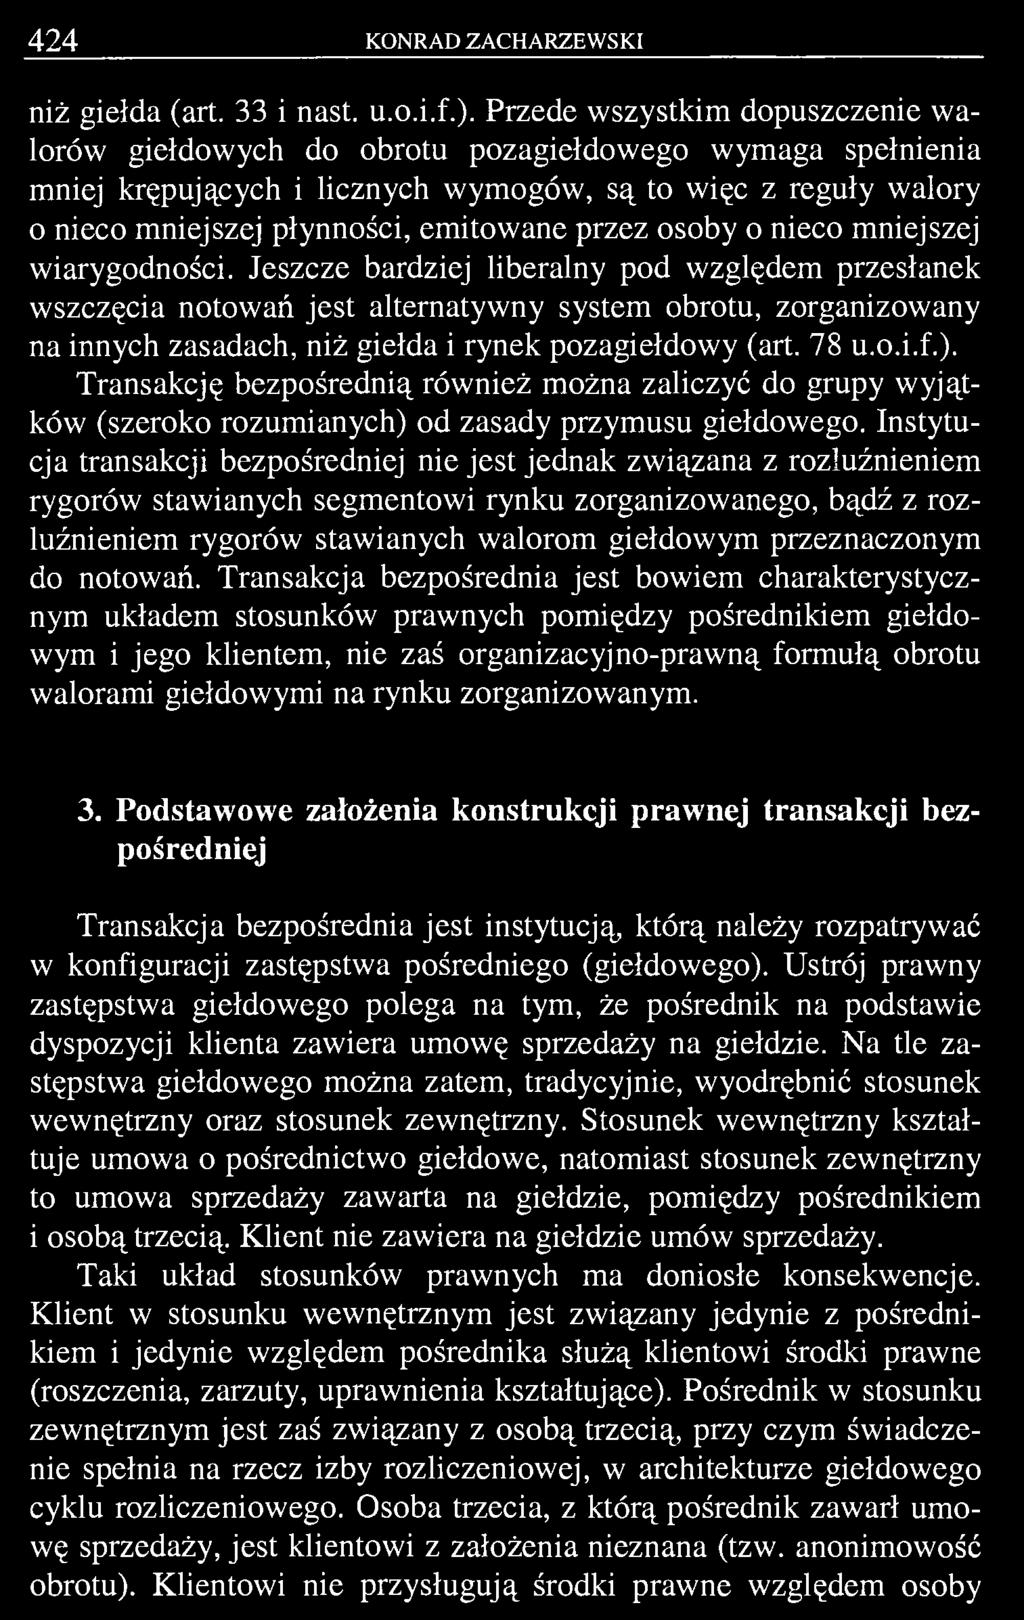 424 KONRAD ZACHARZEWSKI niż giełda (art. 33 i nast. u.o.i.f.).